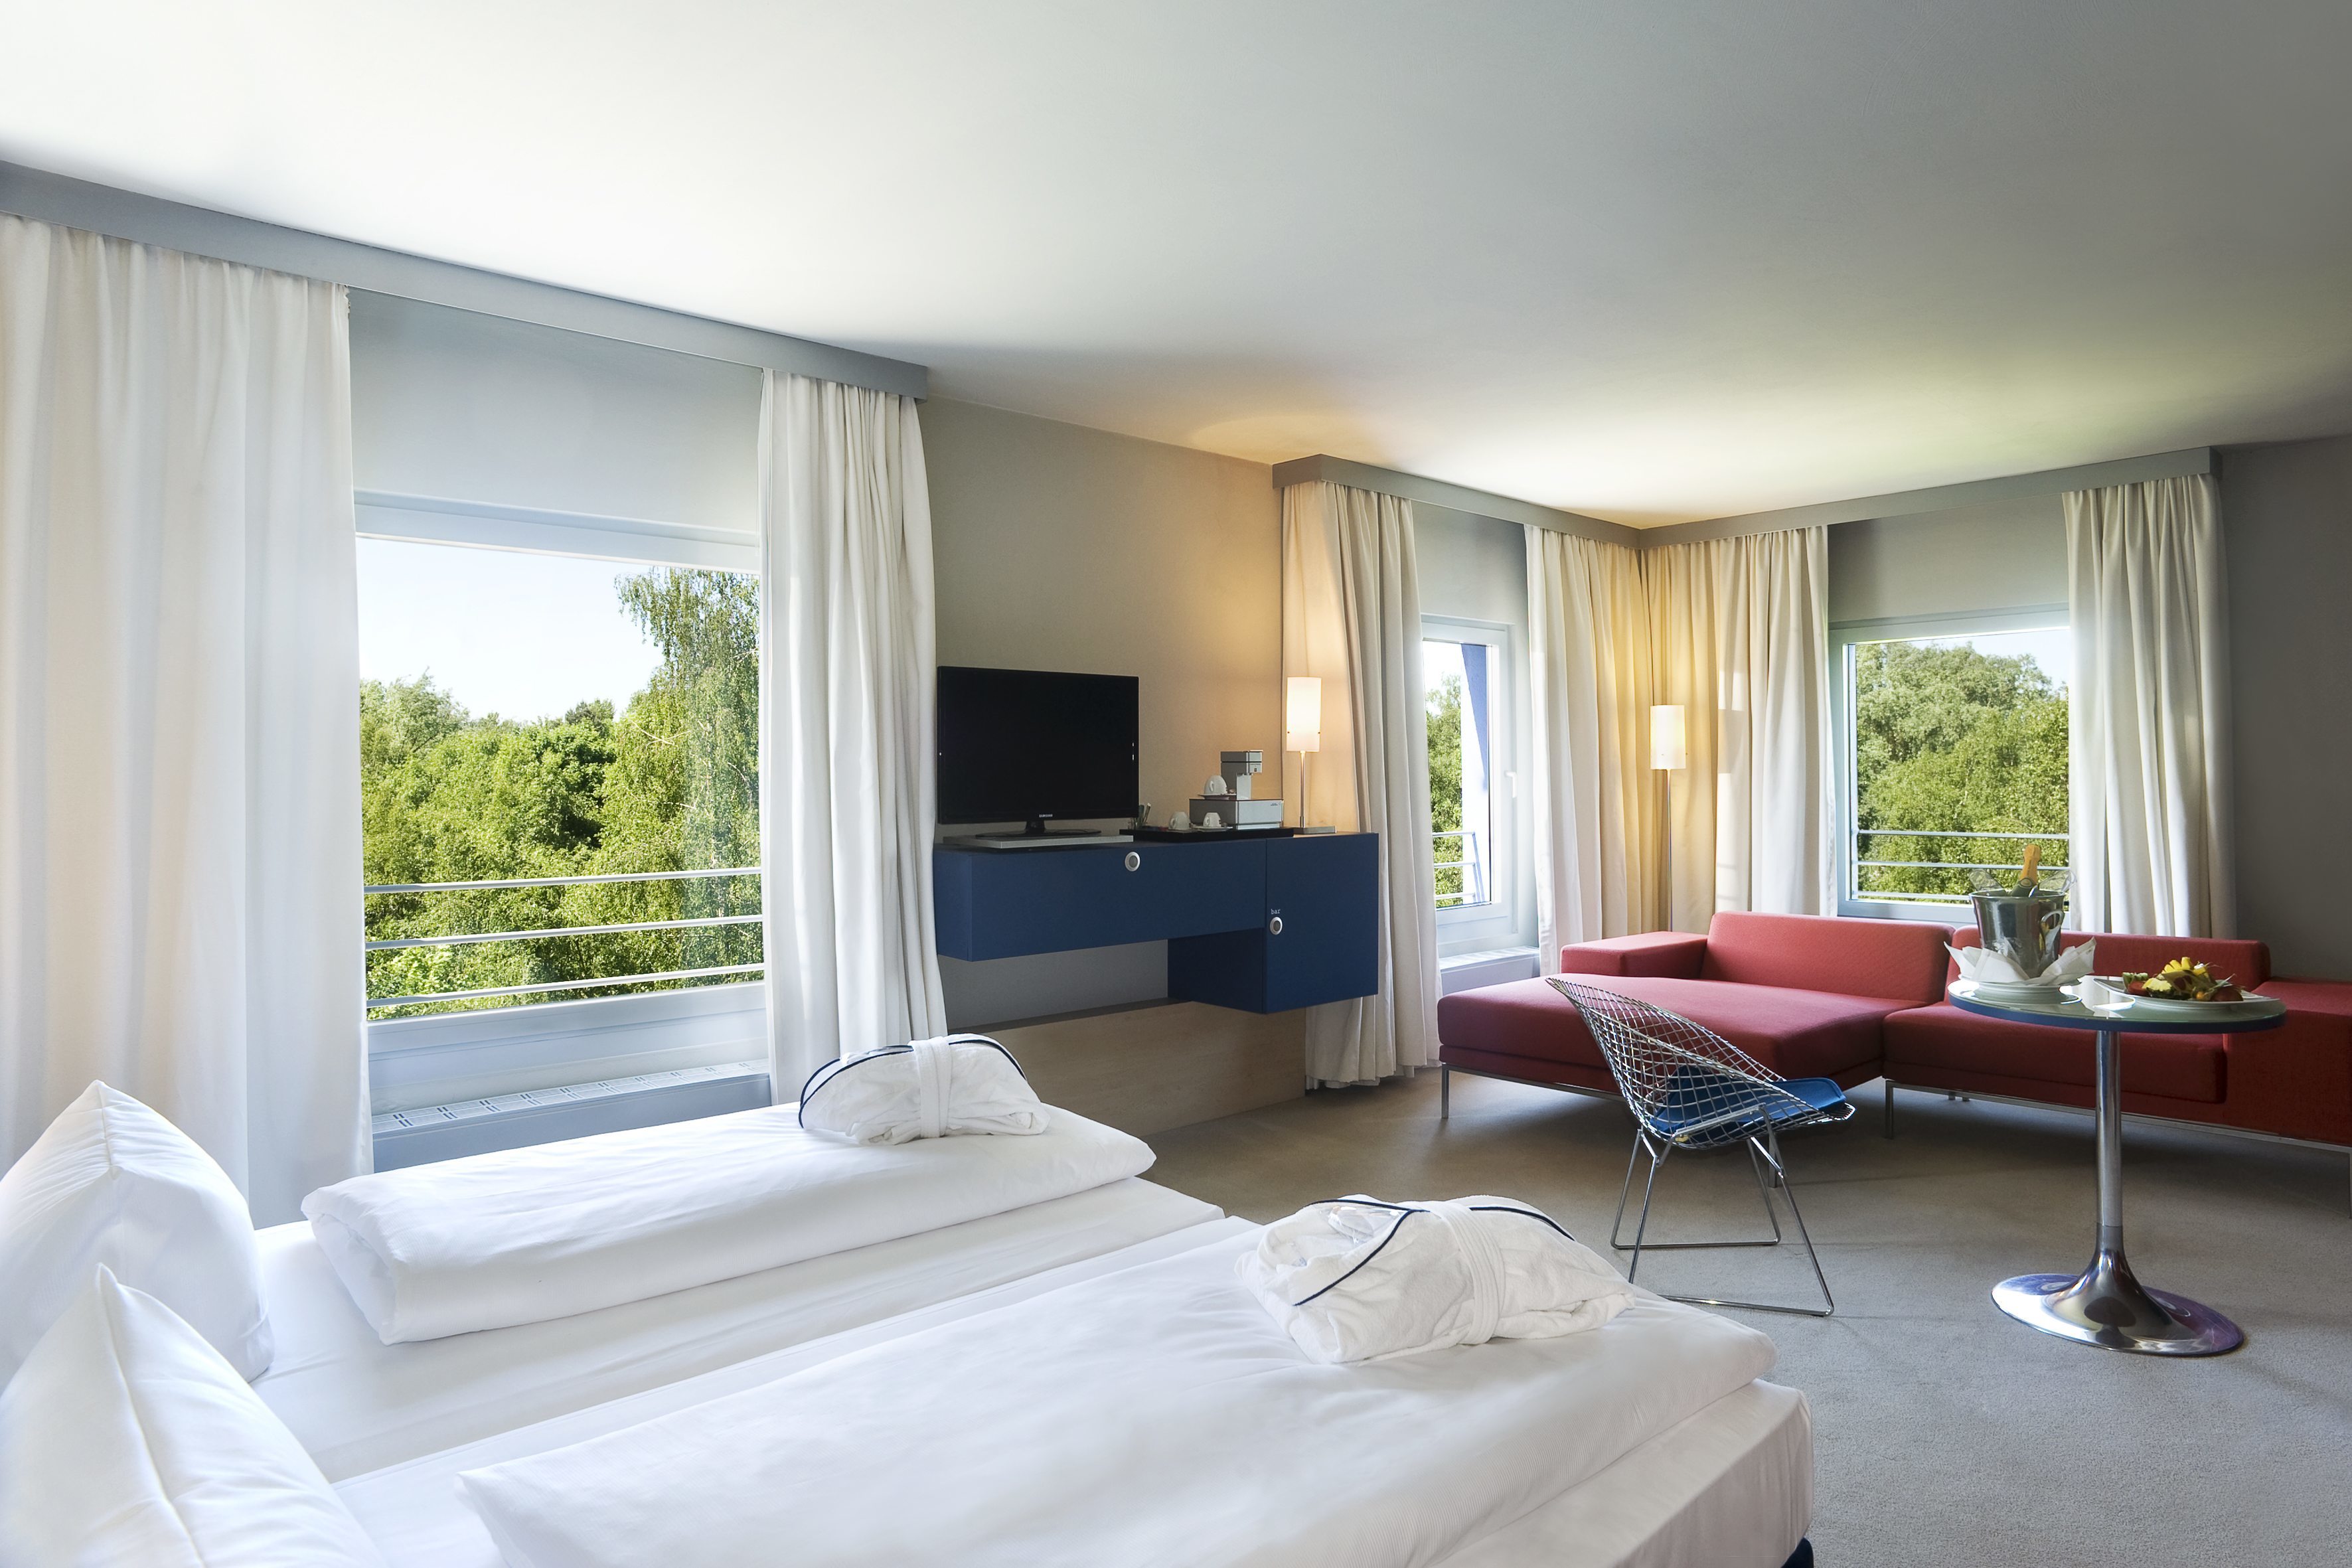 Innenansicht des Studio des ATLANTIC Hotel Universum in Bremen mit großzügigem Wohnraum